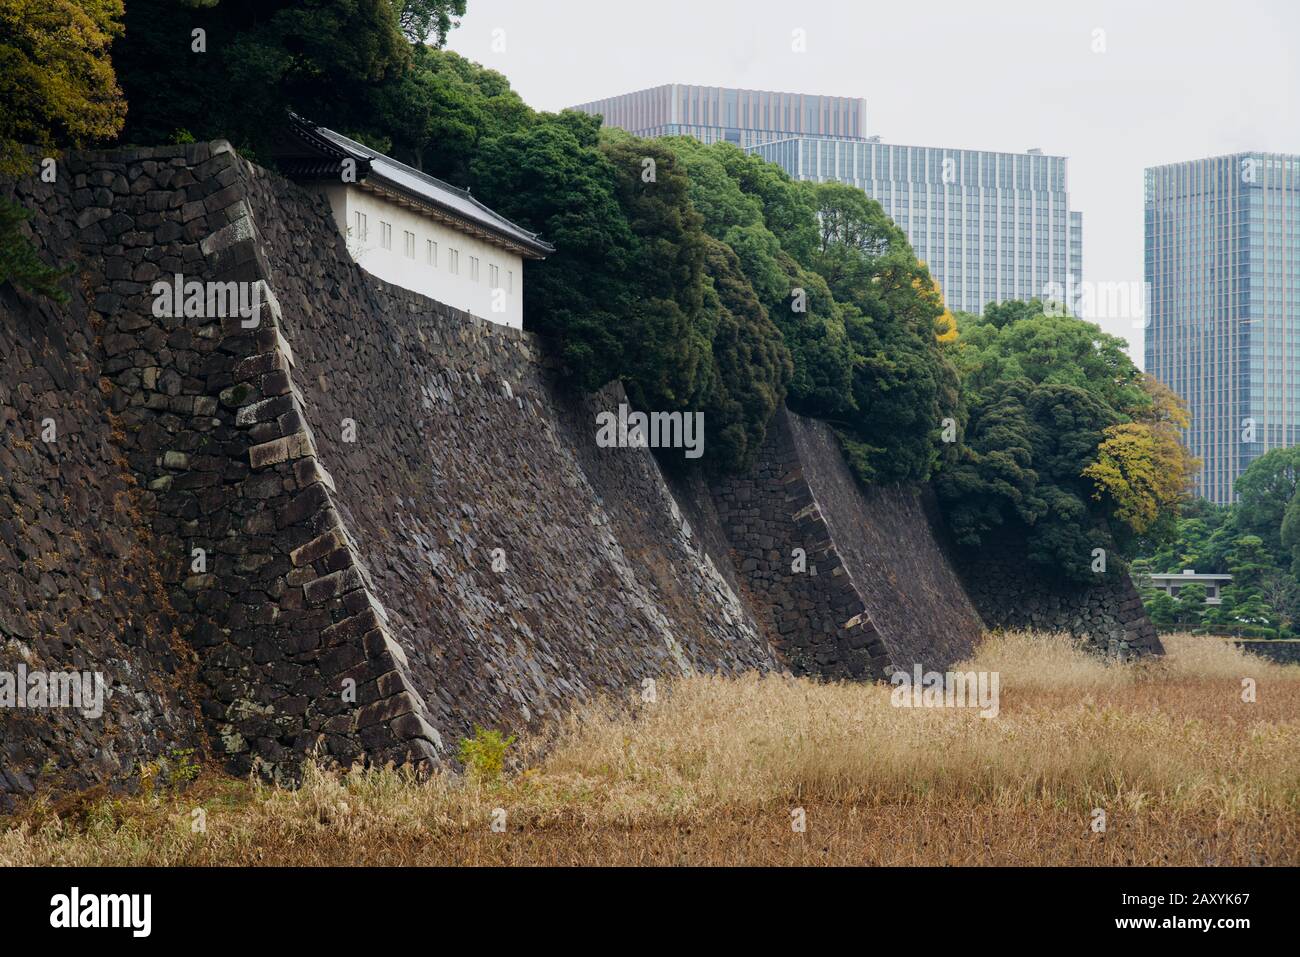 Fujimi Tamon Defense House at the Tokyo Imperial Palace, Chiyoda, Tokyo, Japan Stock Photo